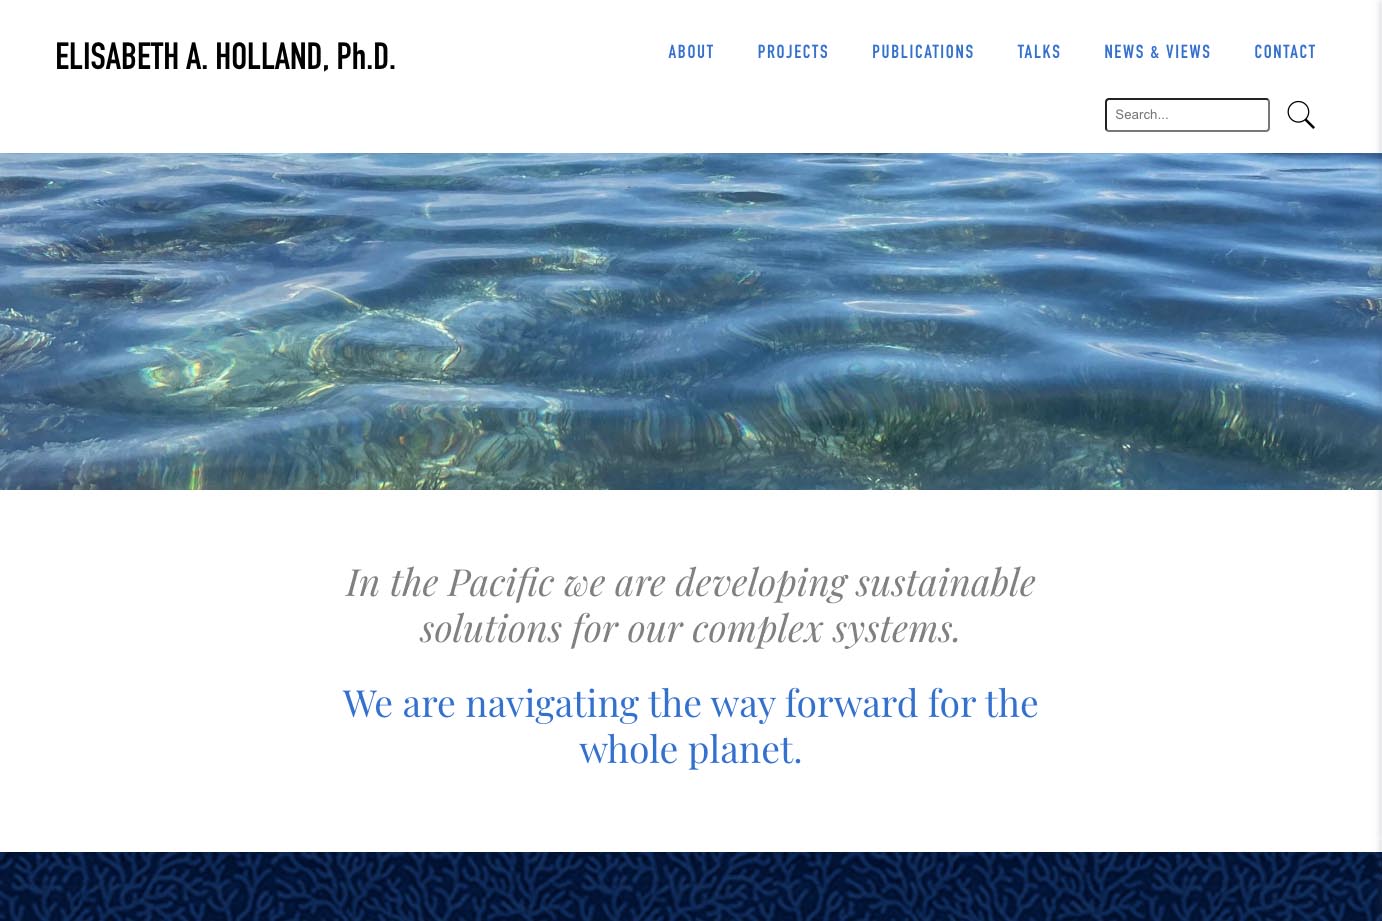 Bespoke website design for an environmental scientist - Elisabeth Holland.